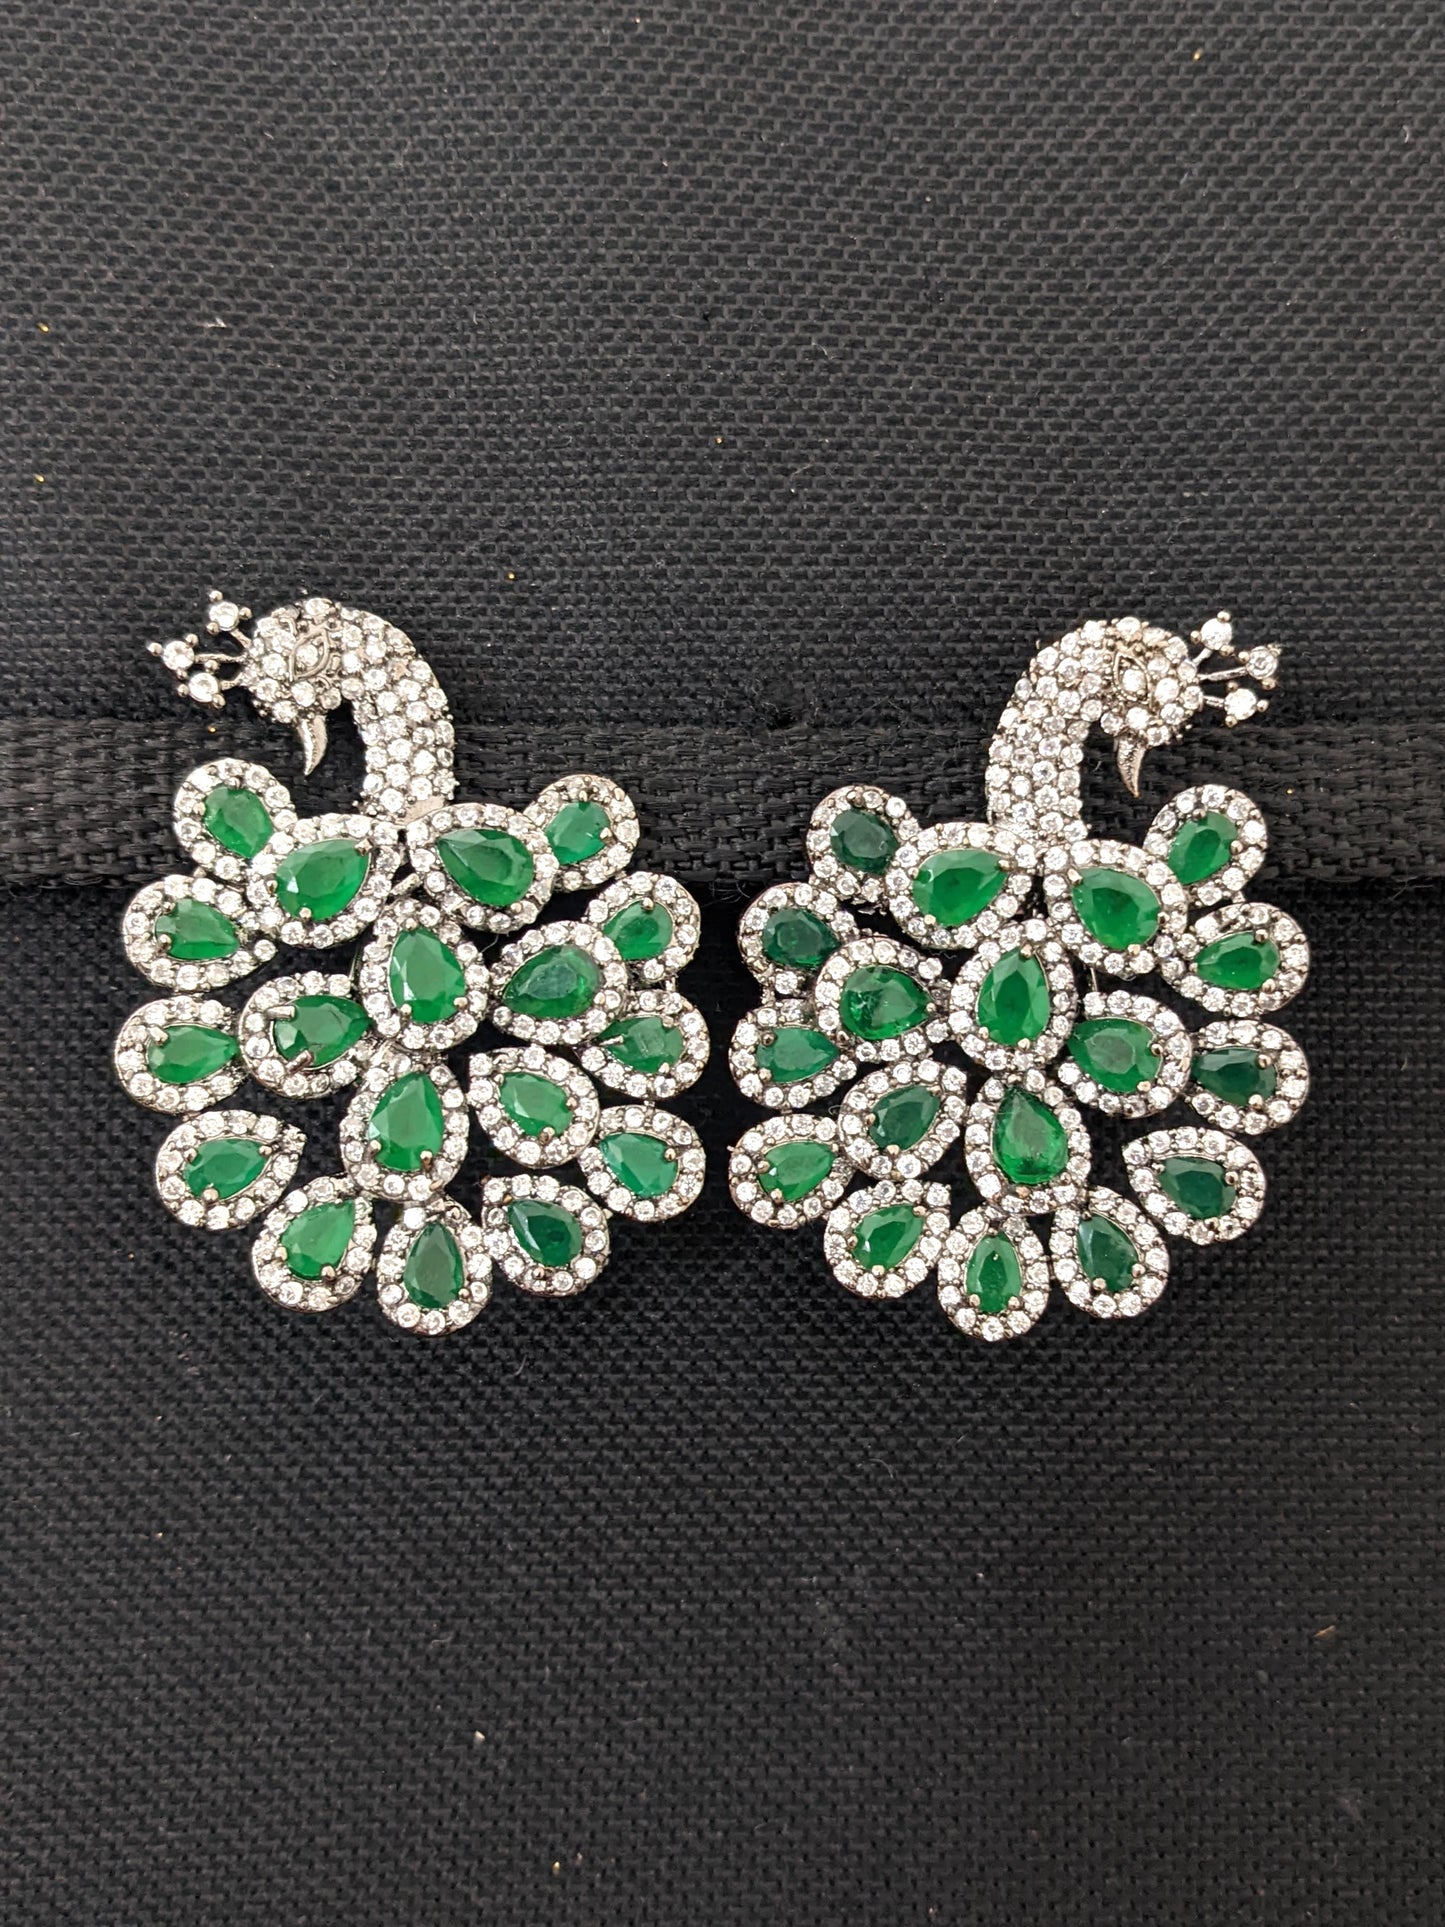 XL Size Peacock Stud CZ earrings